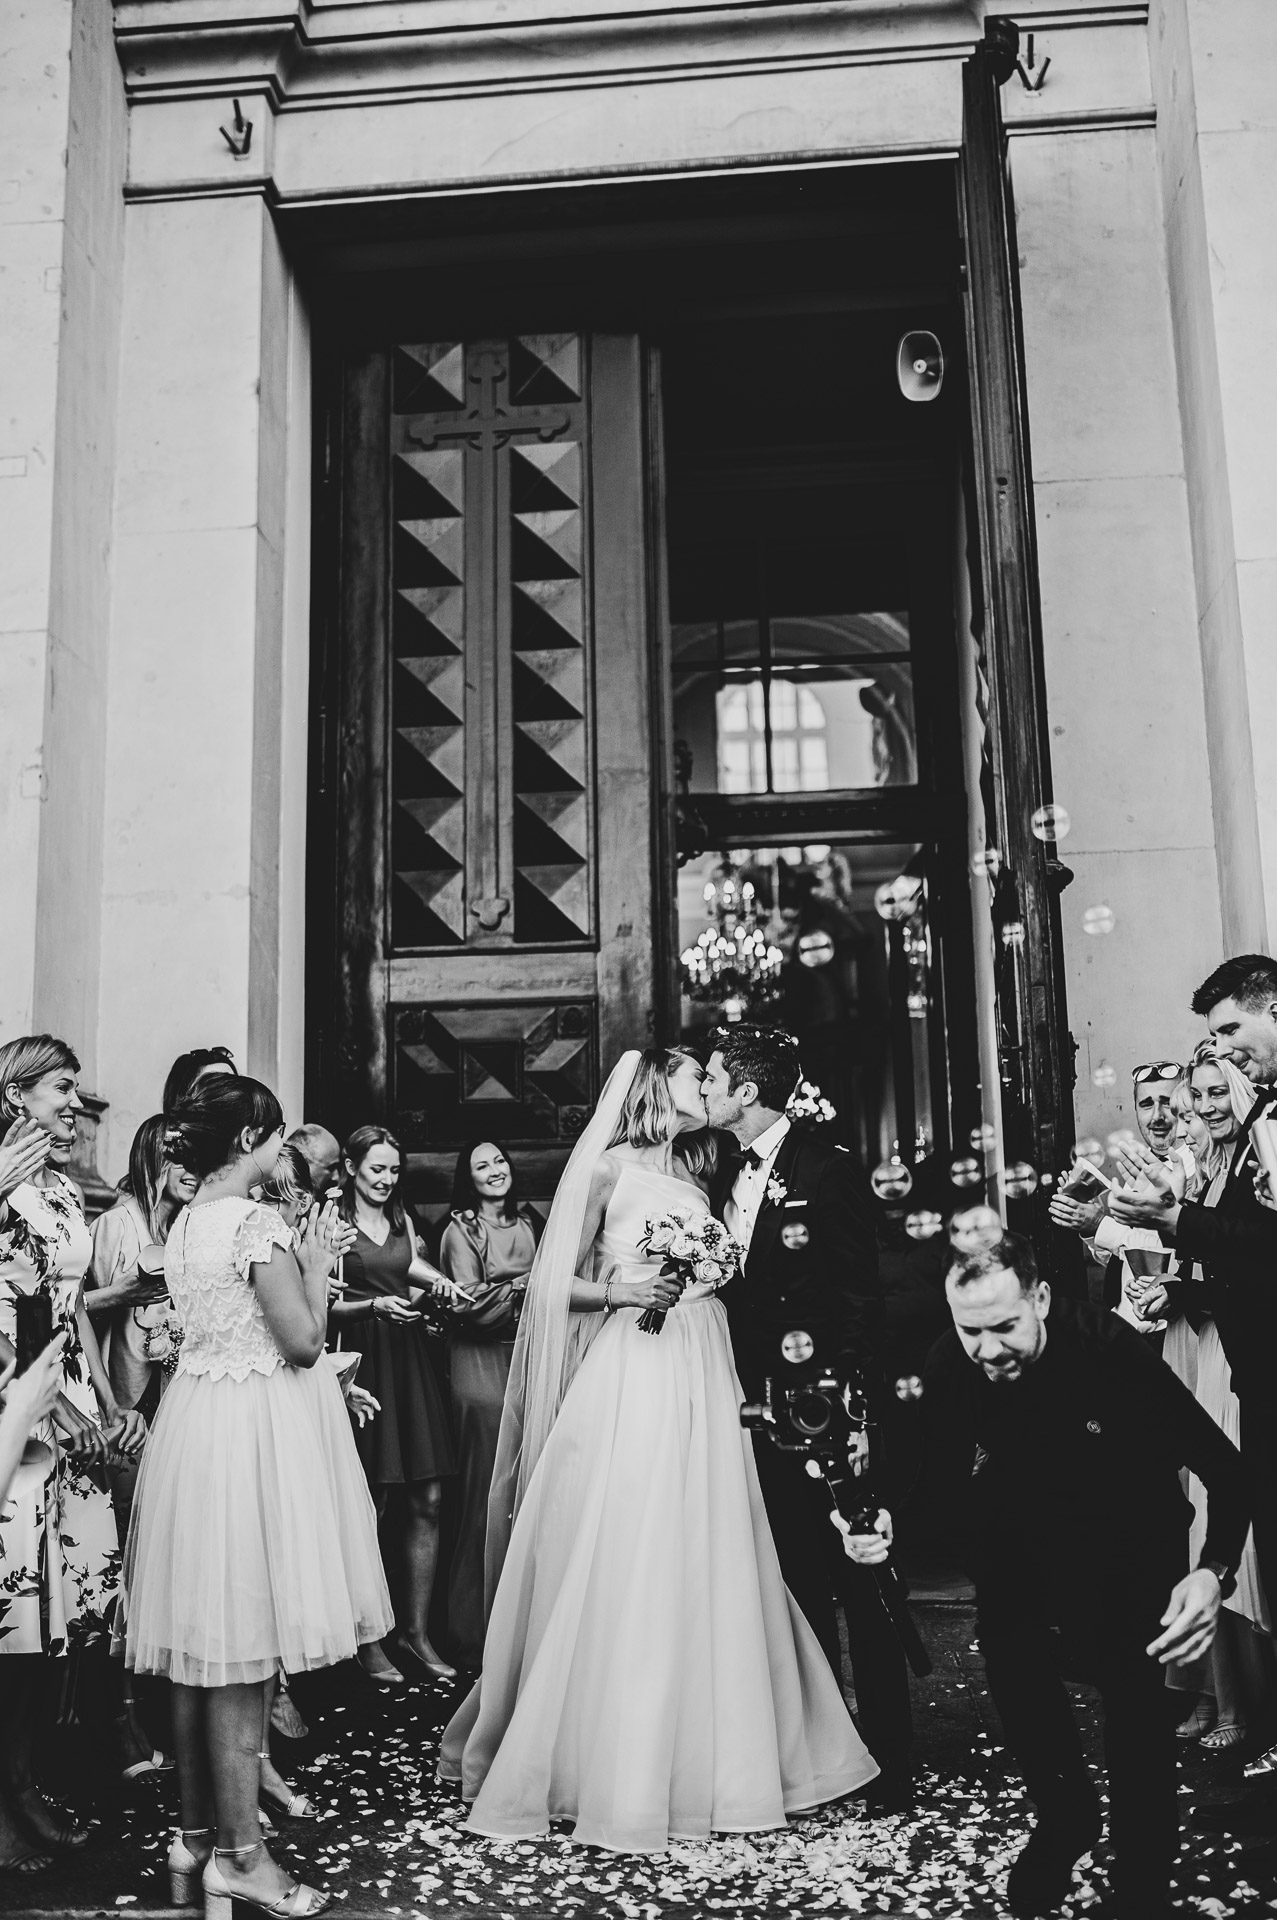 Fotograf na ślubie i weselu.